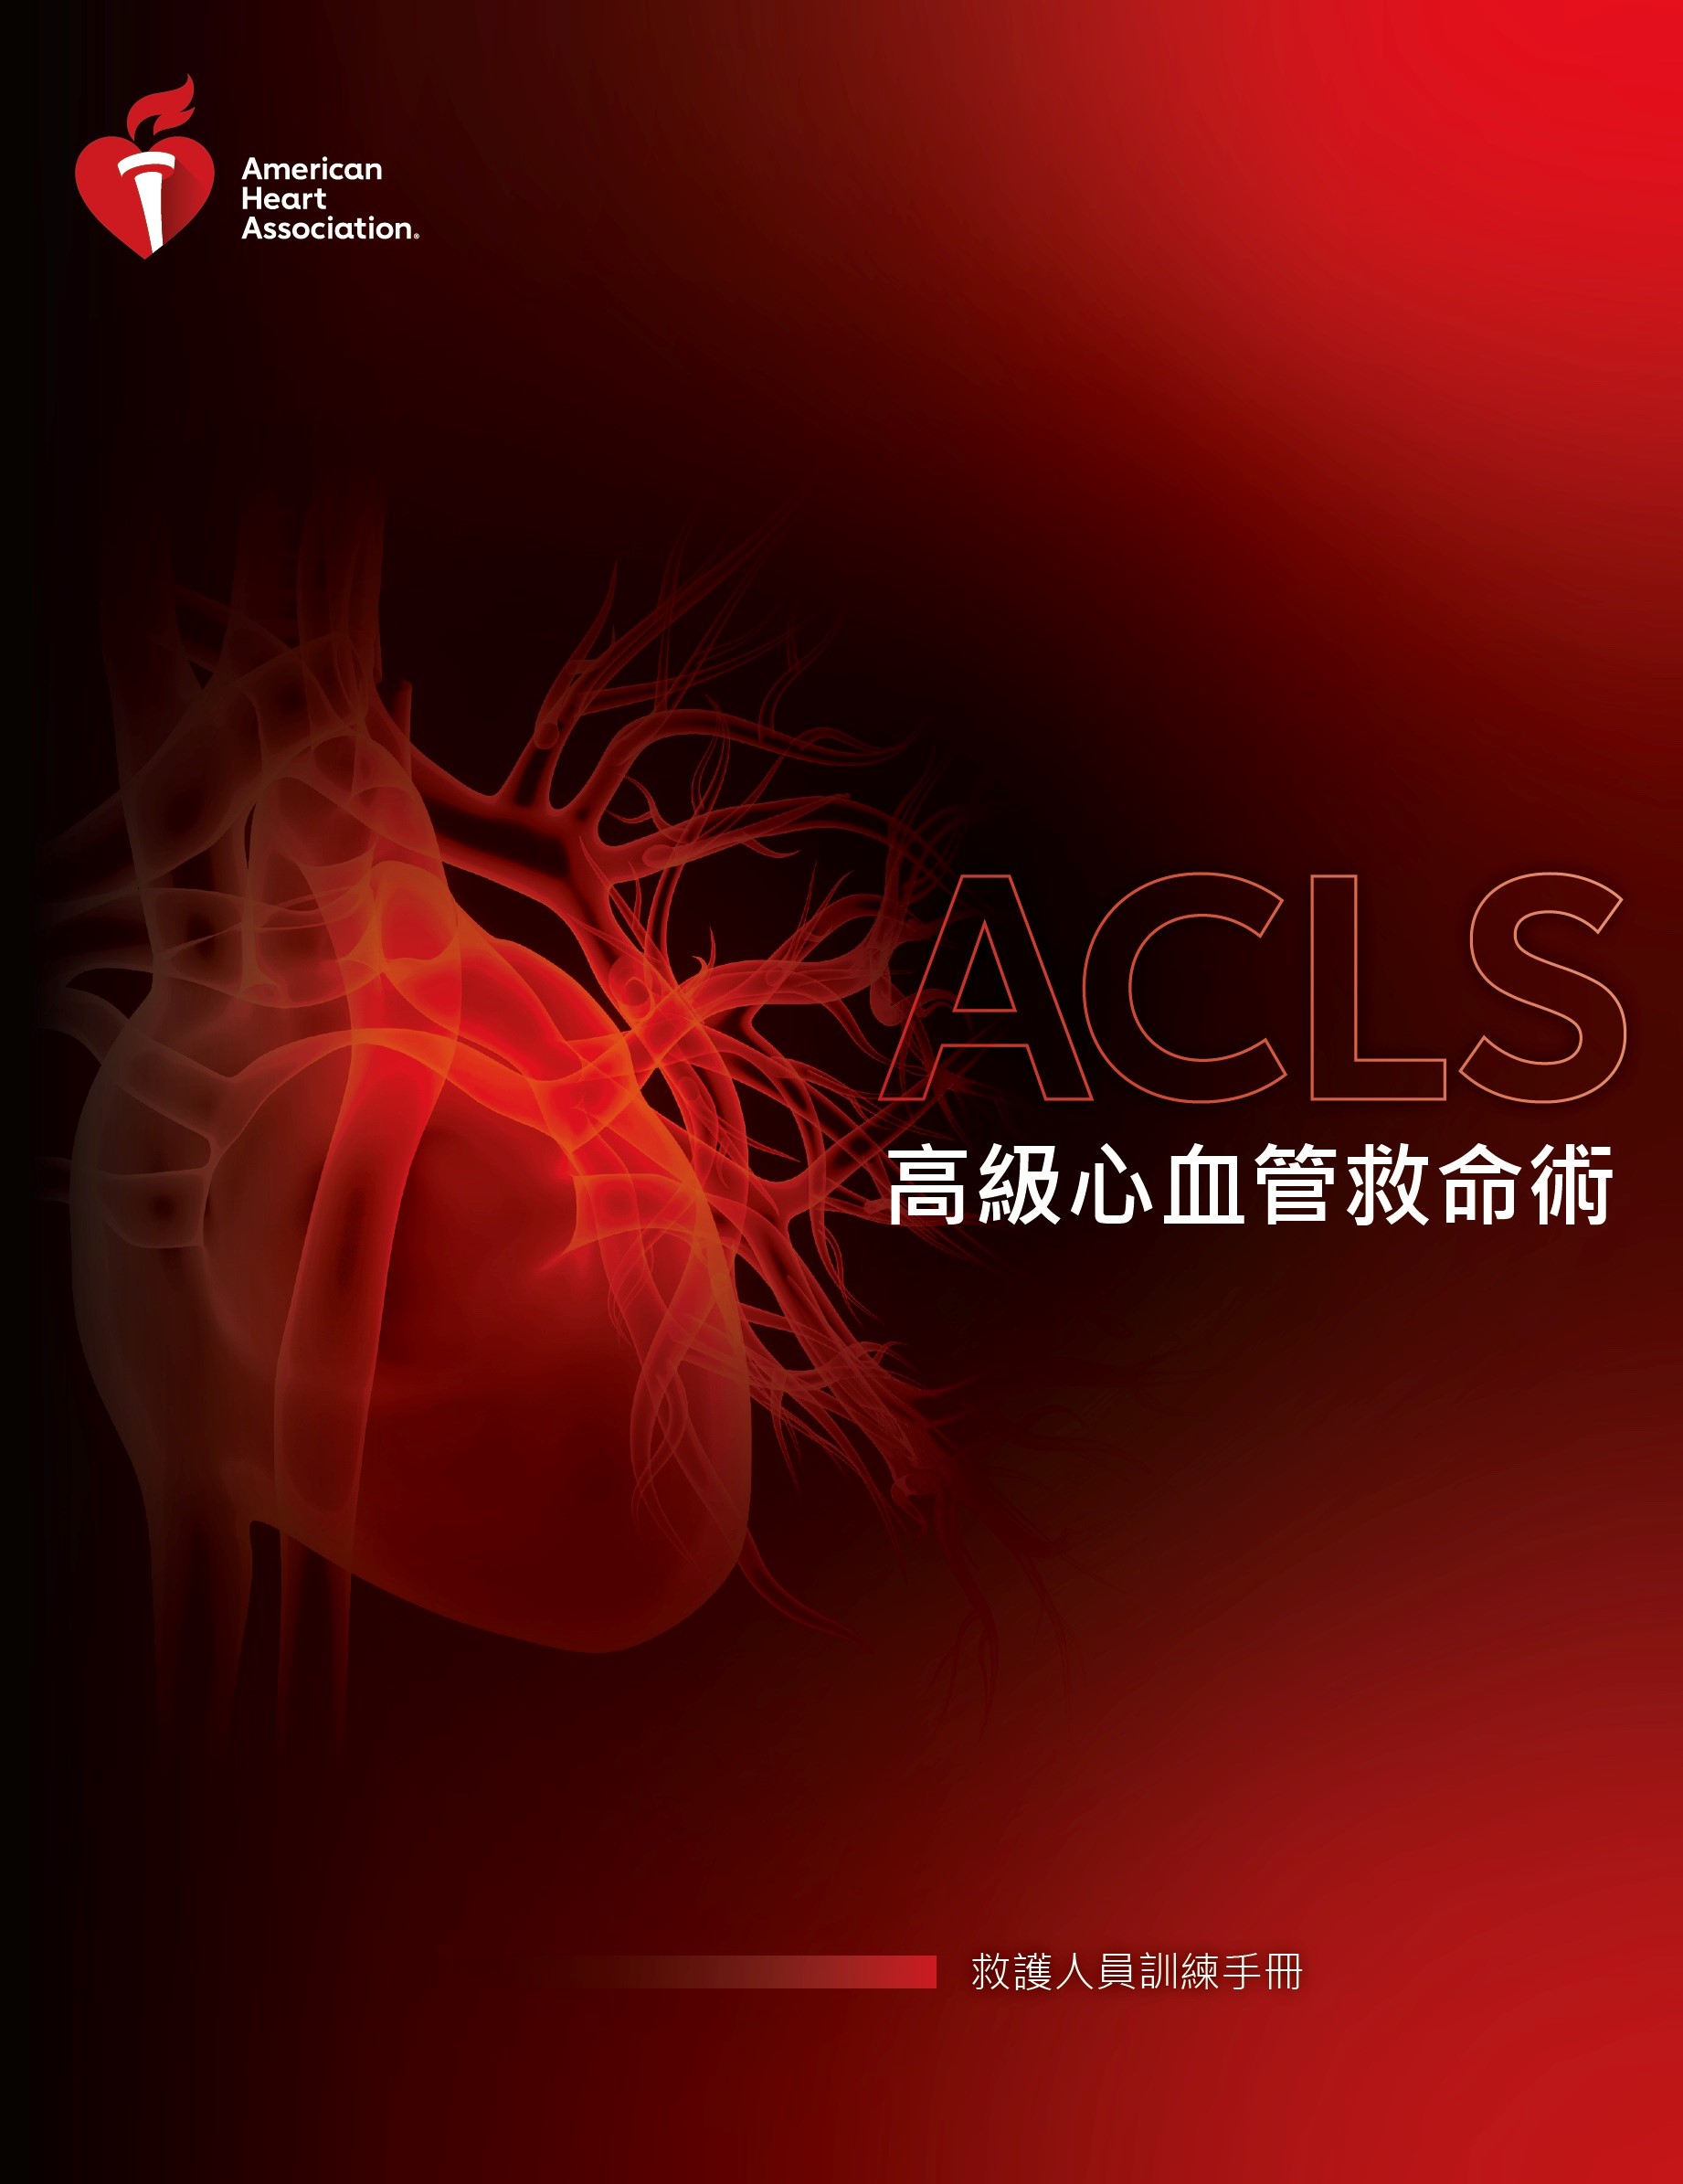 美國心臟協會高級心血管救命術學員手冊 $900